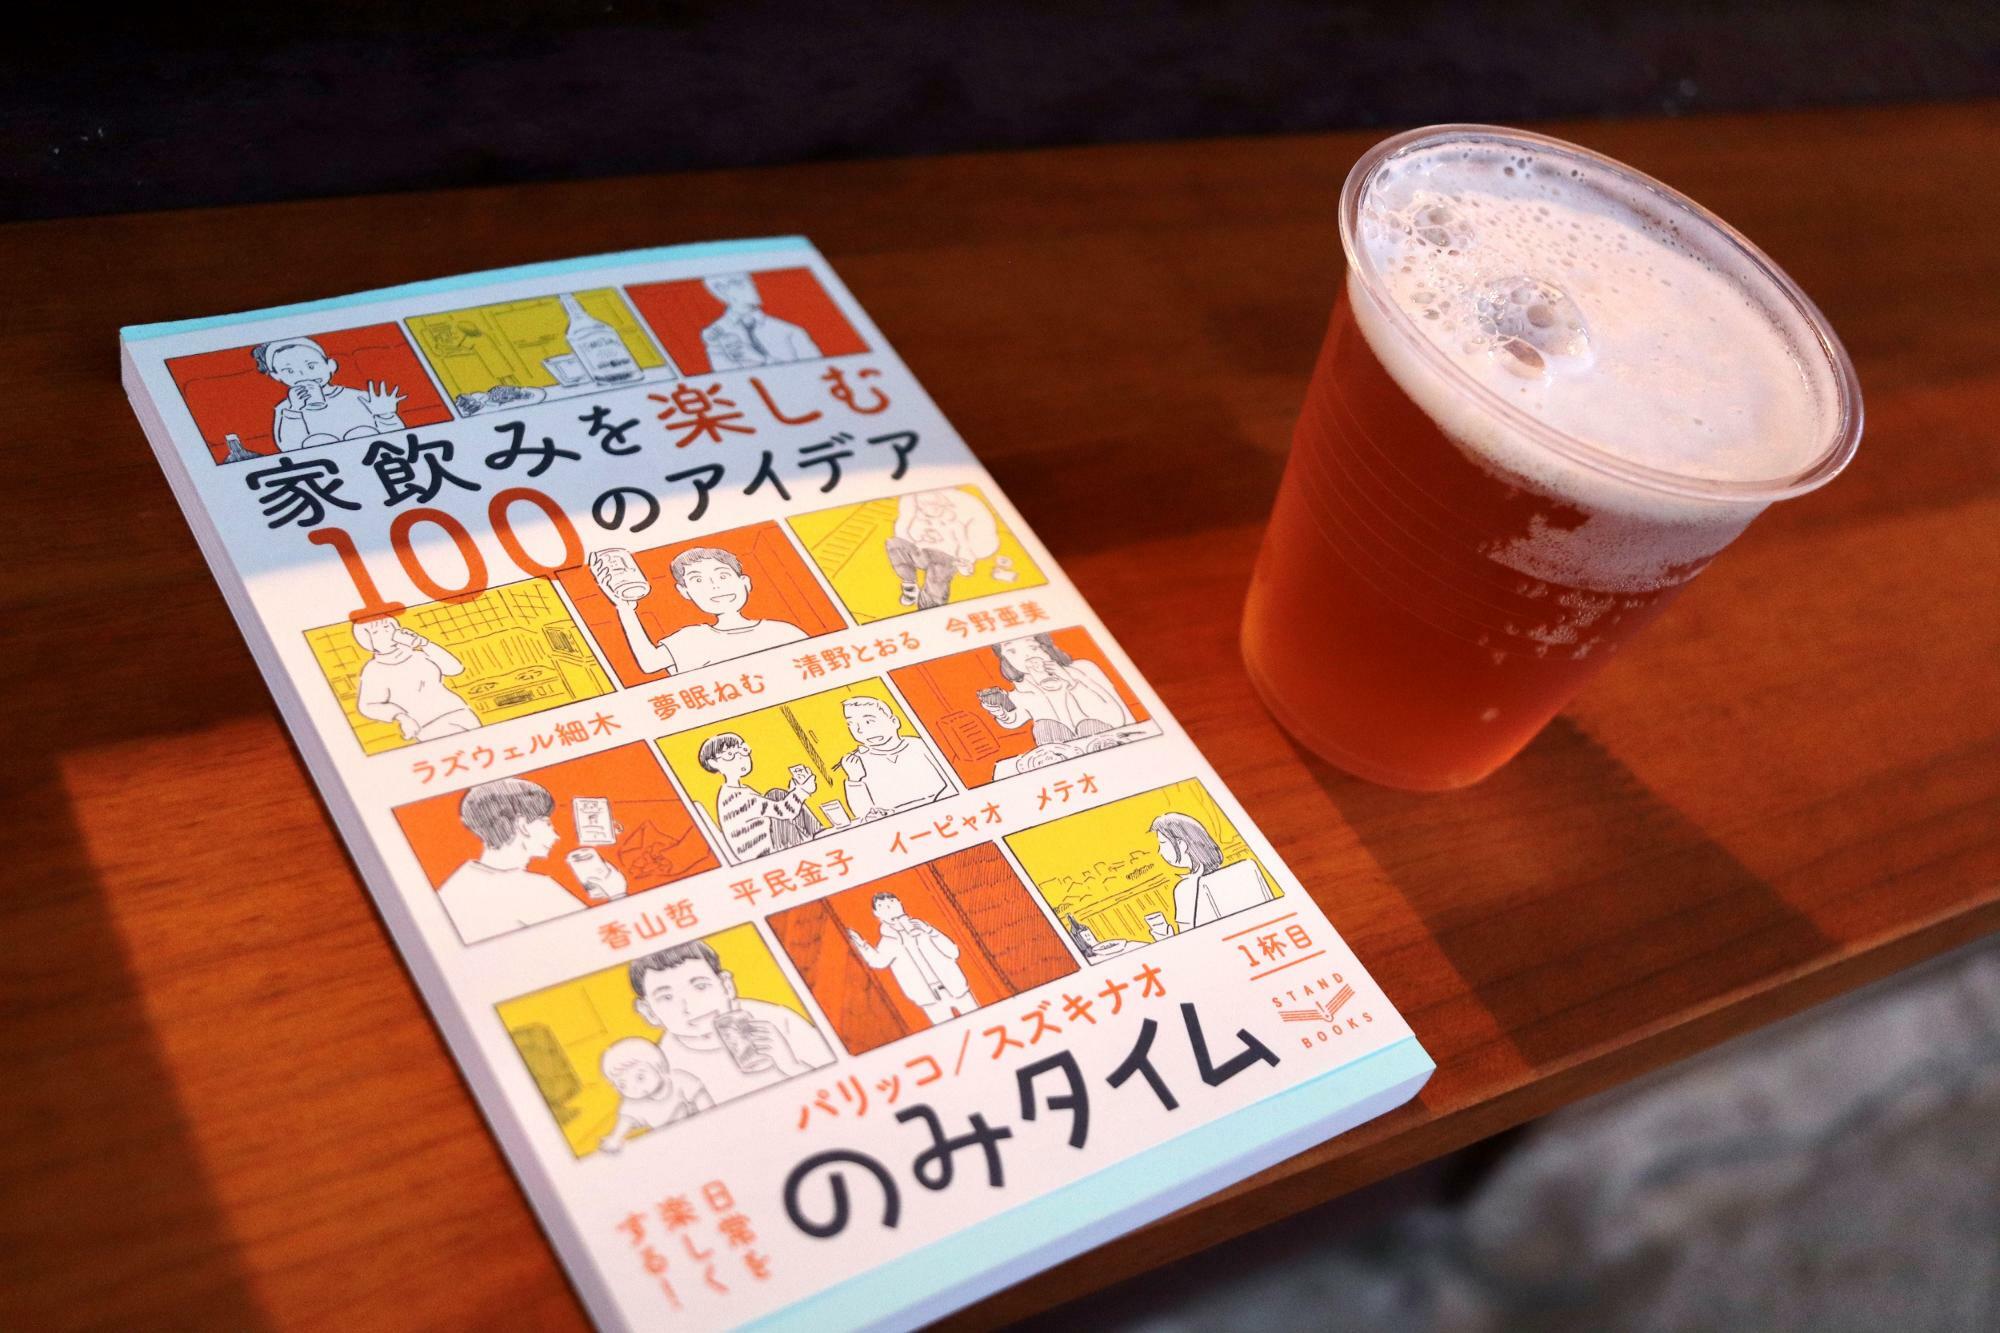 素敵な本と一緒にビールを楽しむ素敵な時間です